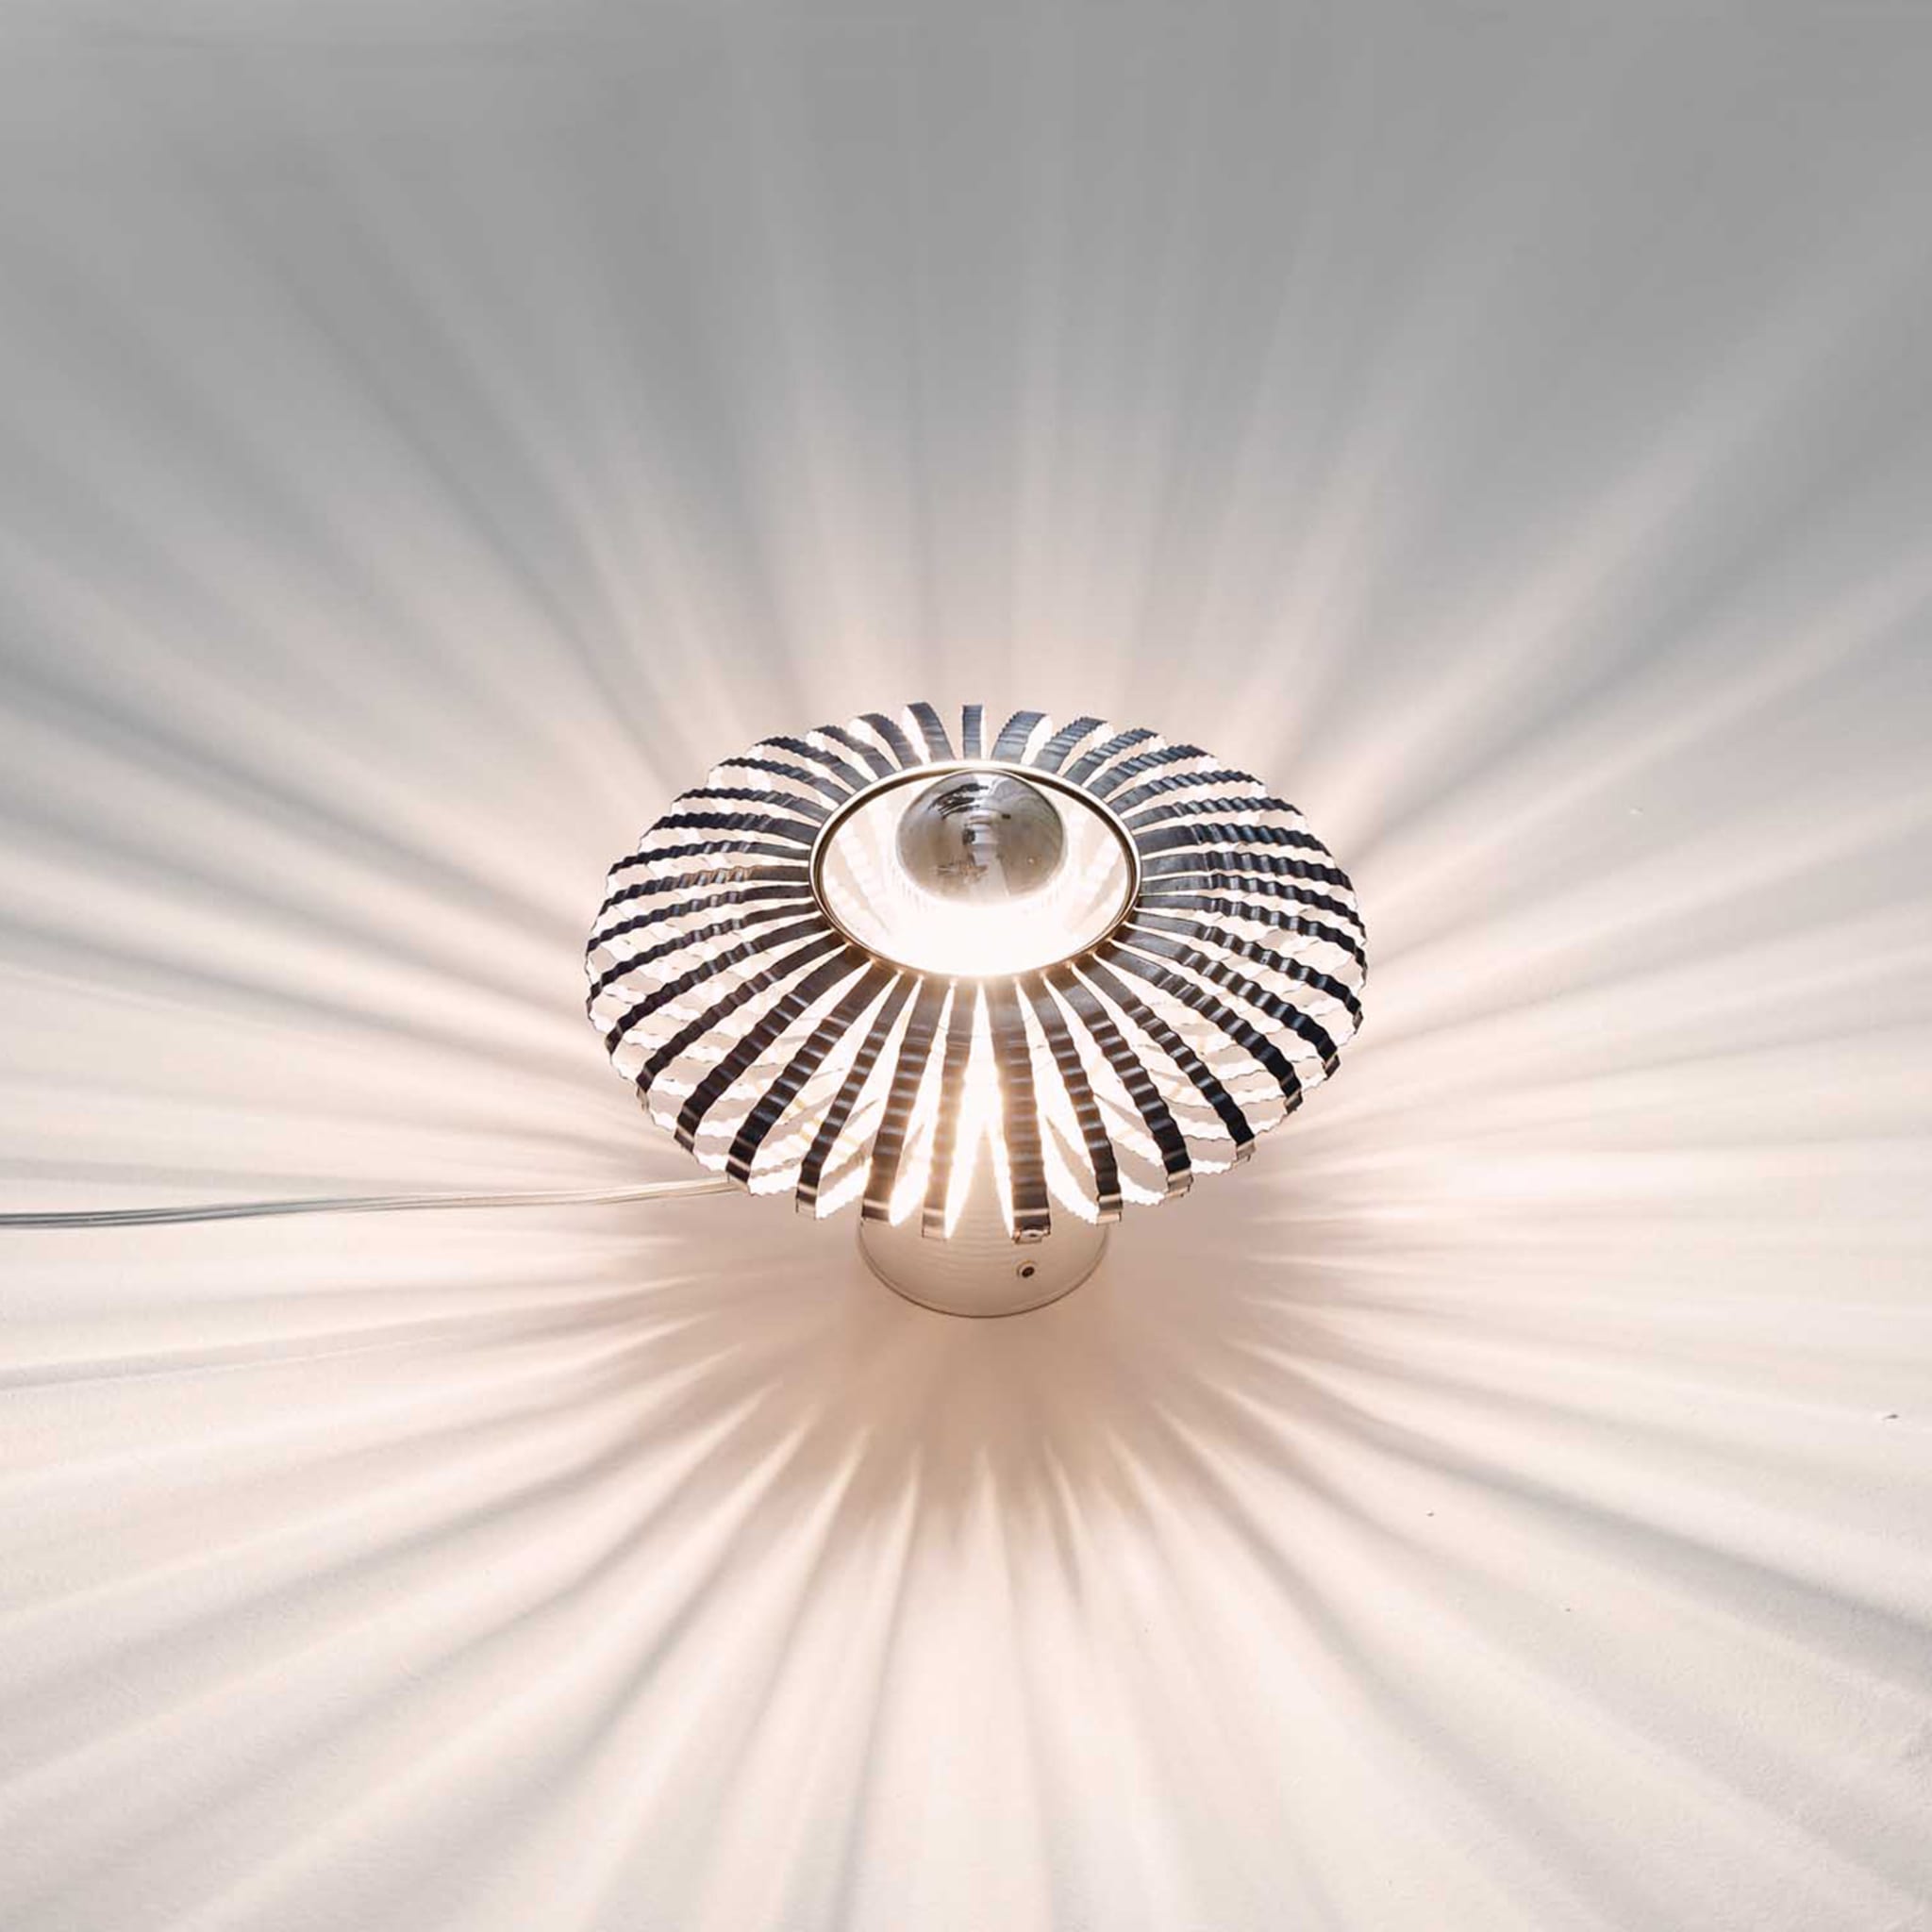 Celeste Table Lamp by Nadja Galli Zugaro - Alternative view 1